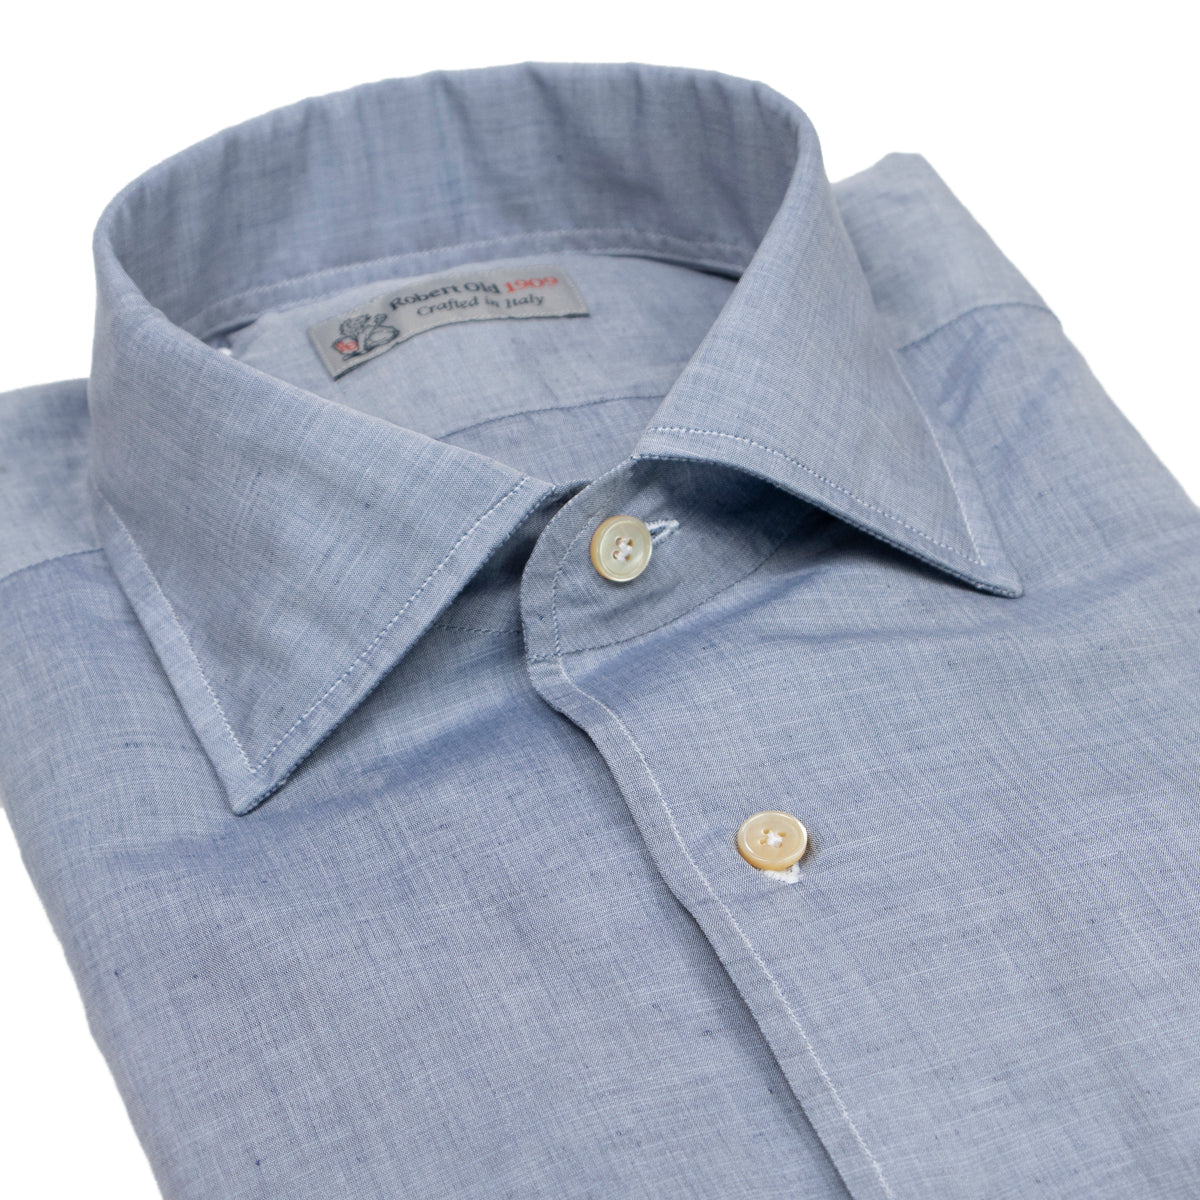 Steel Blue Cotton & Linen Long Sleeve Shirt  Robert Old   